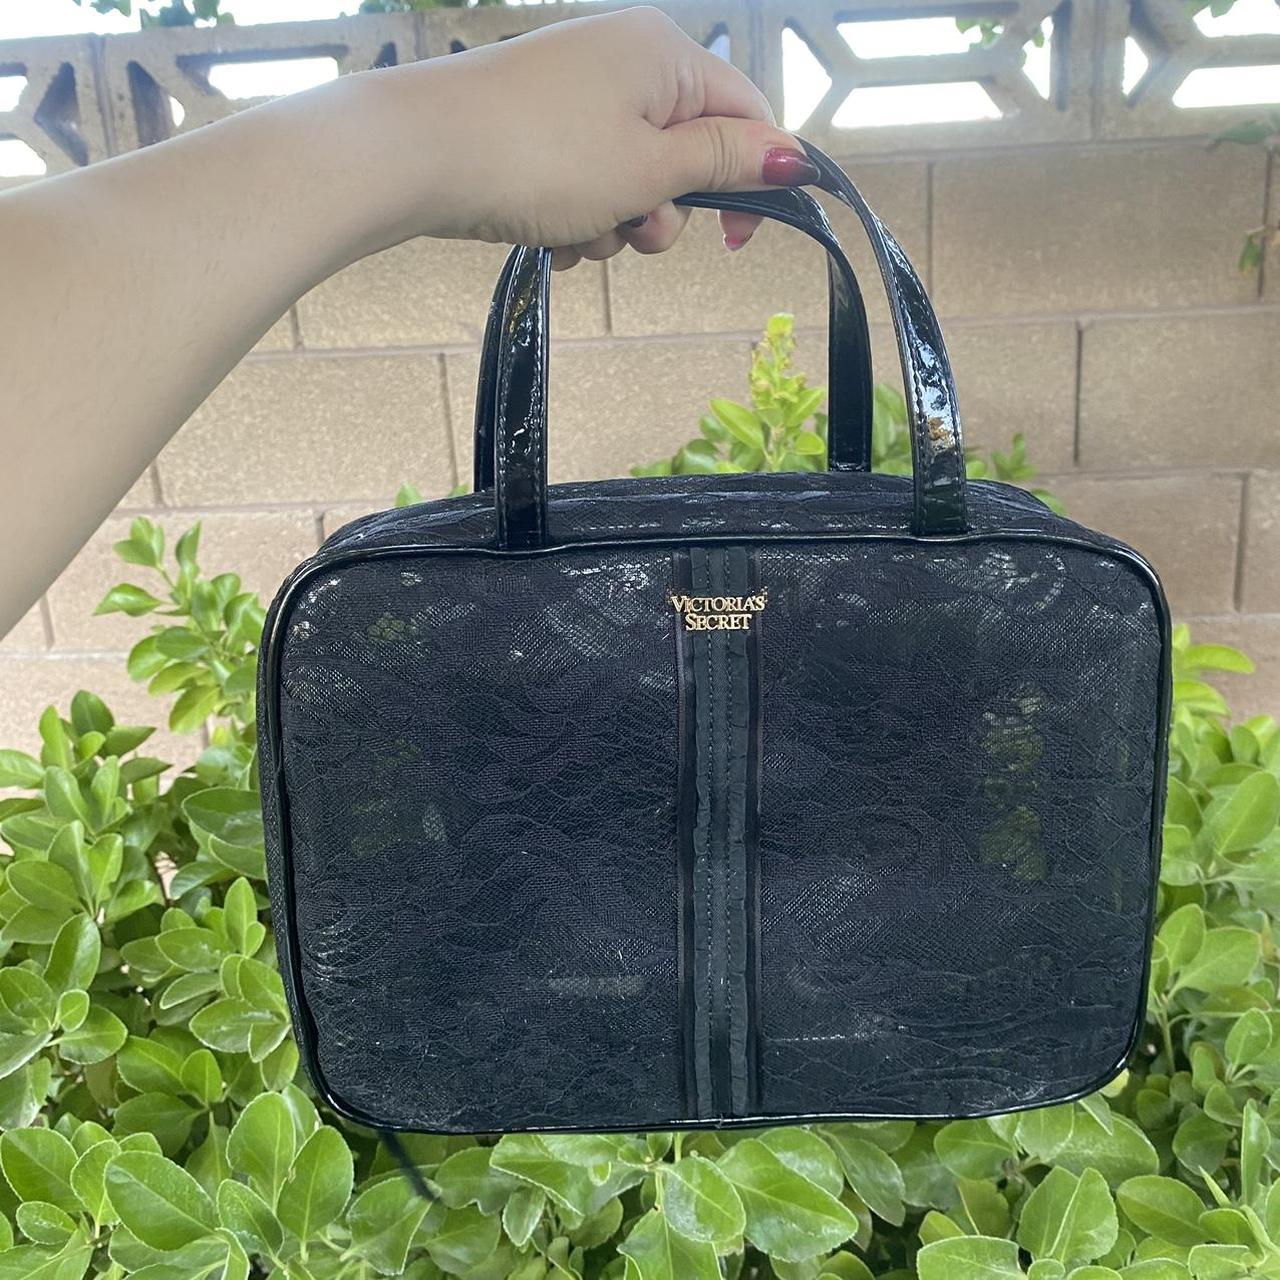 Victorias Secret Black Lace Hanging Travel Bag.